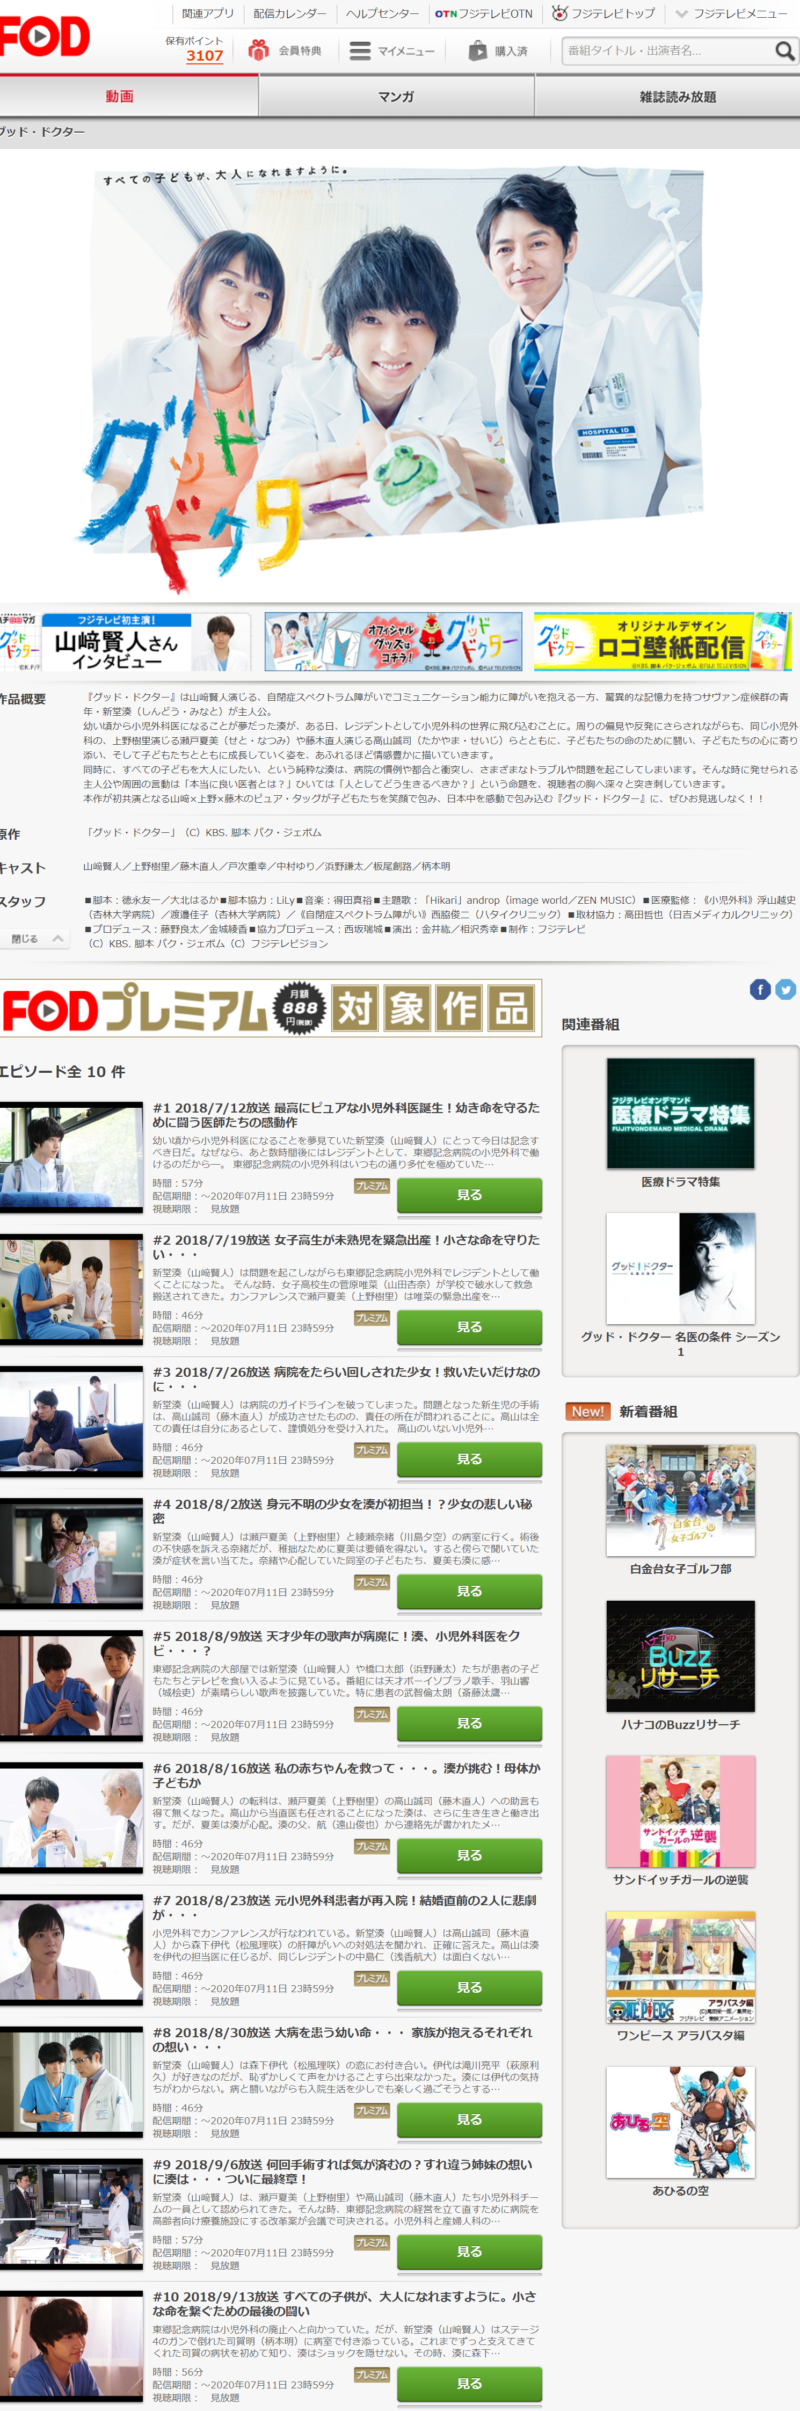 グッドドクター(日本ドラマ)の動画無料視聴方法FOD